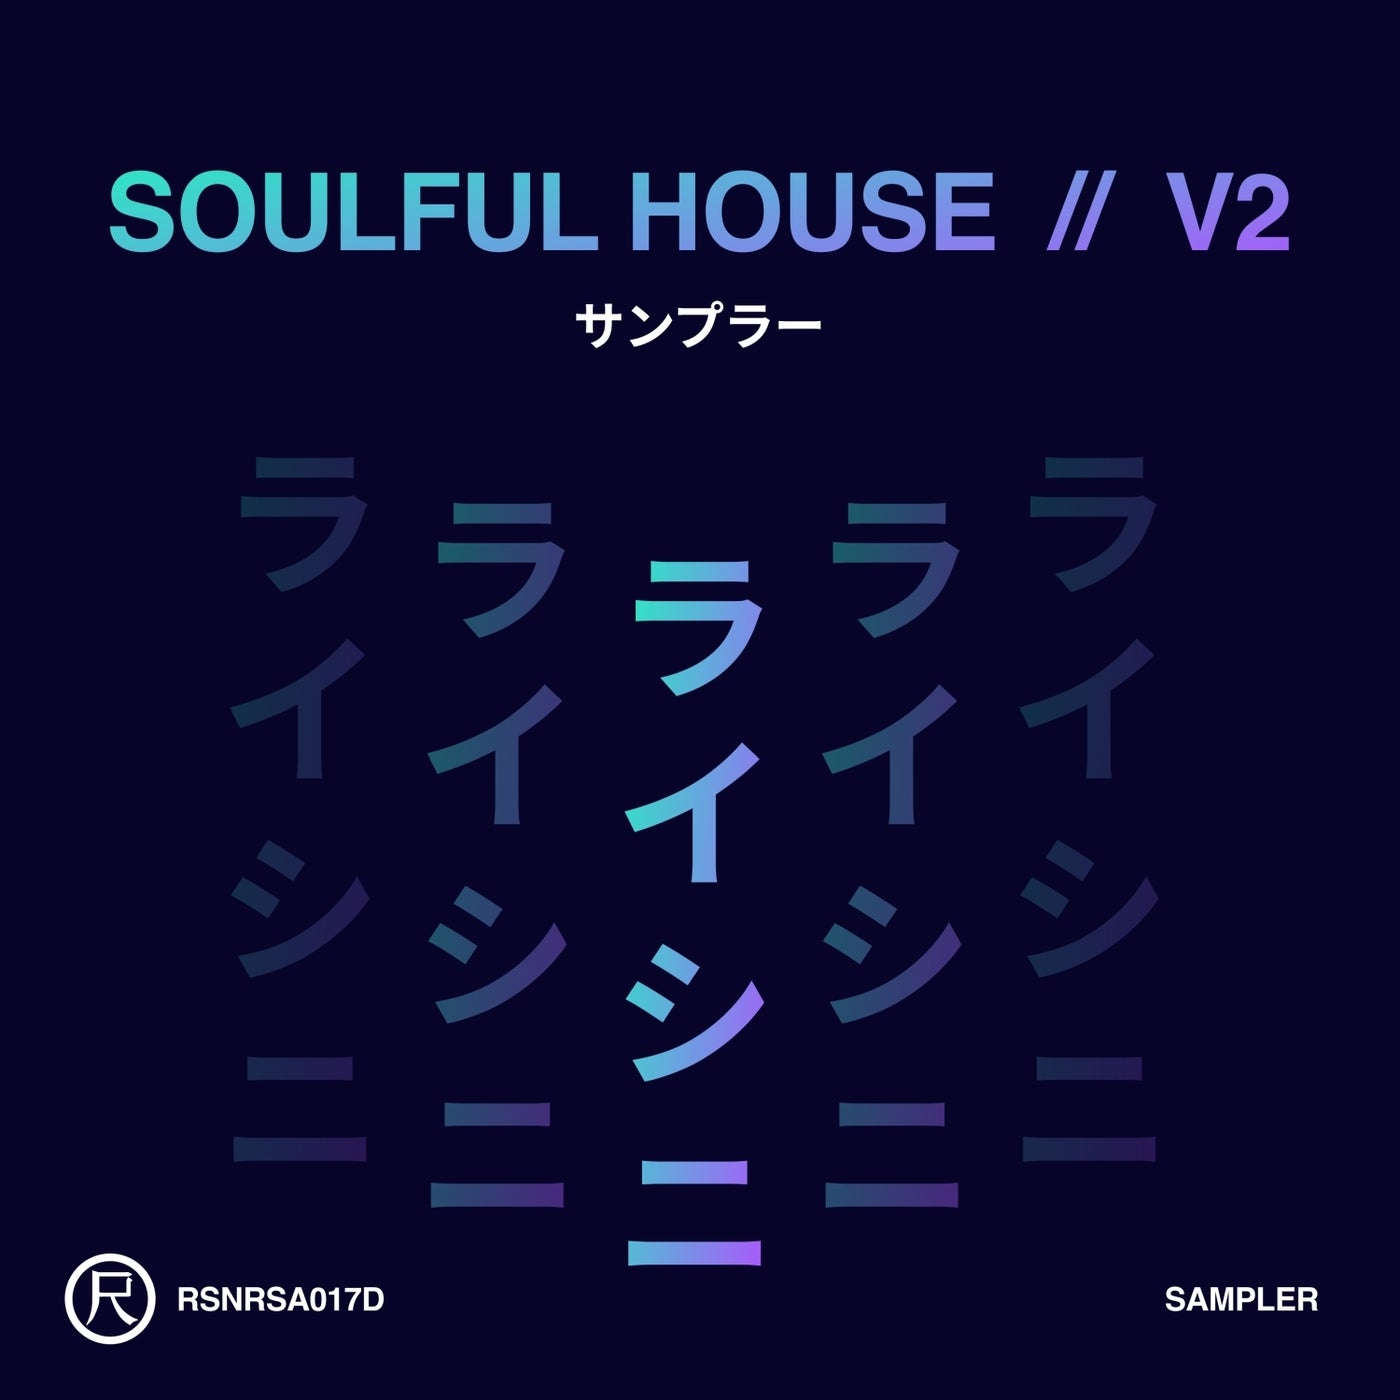 Soulful House V2 (Sampler)